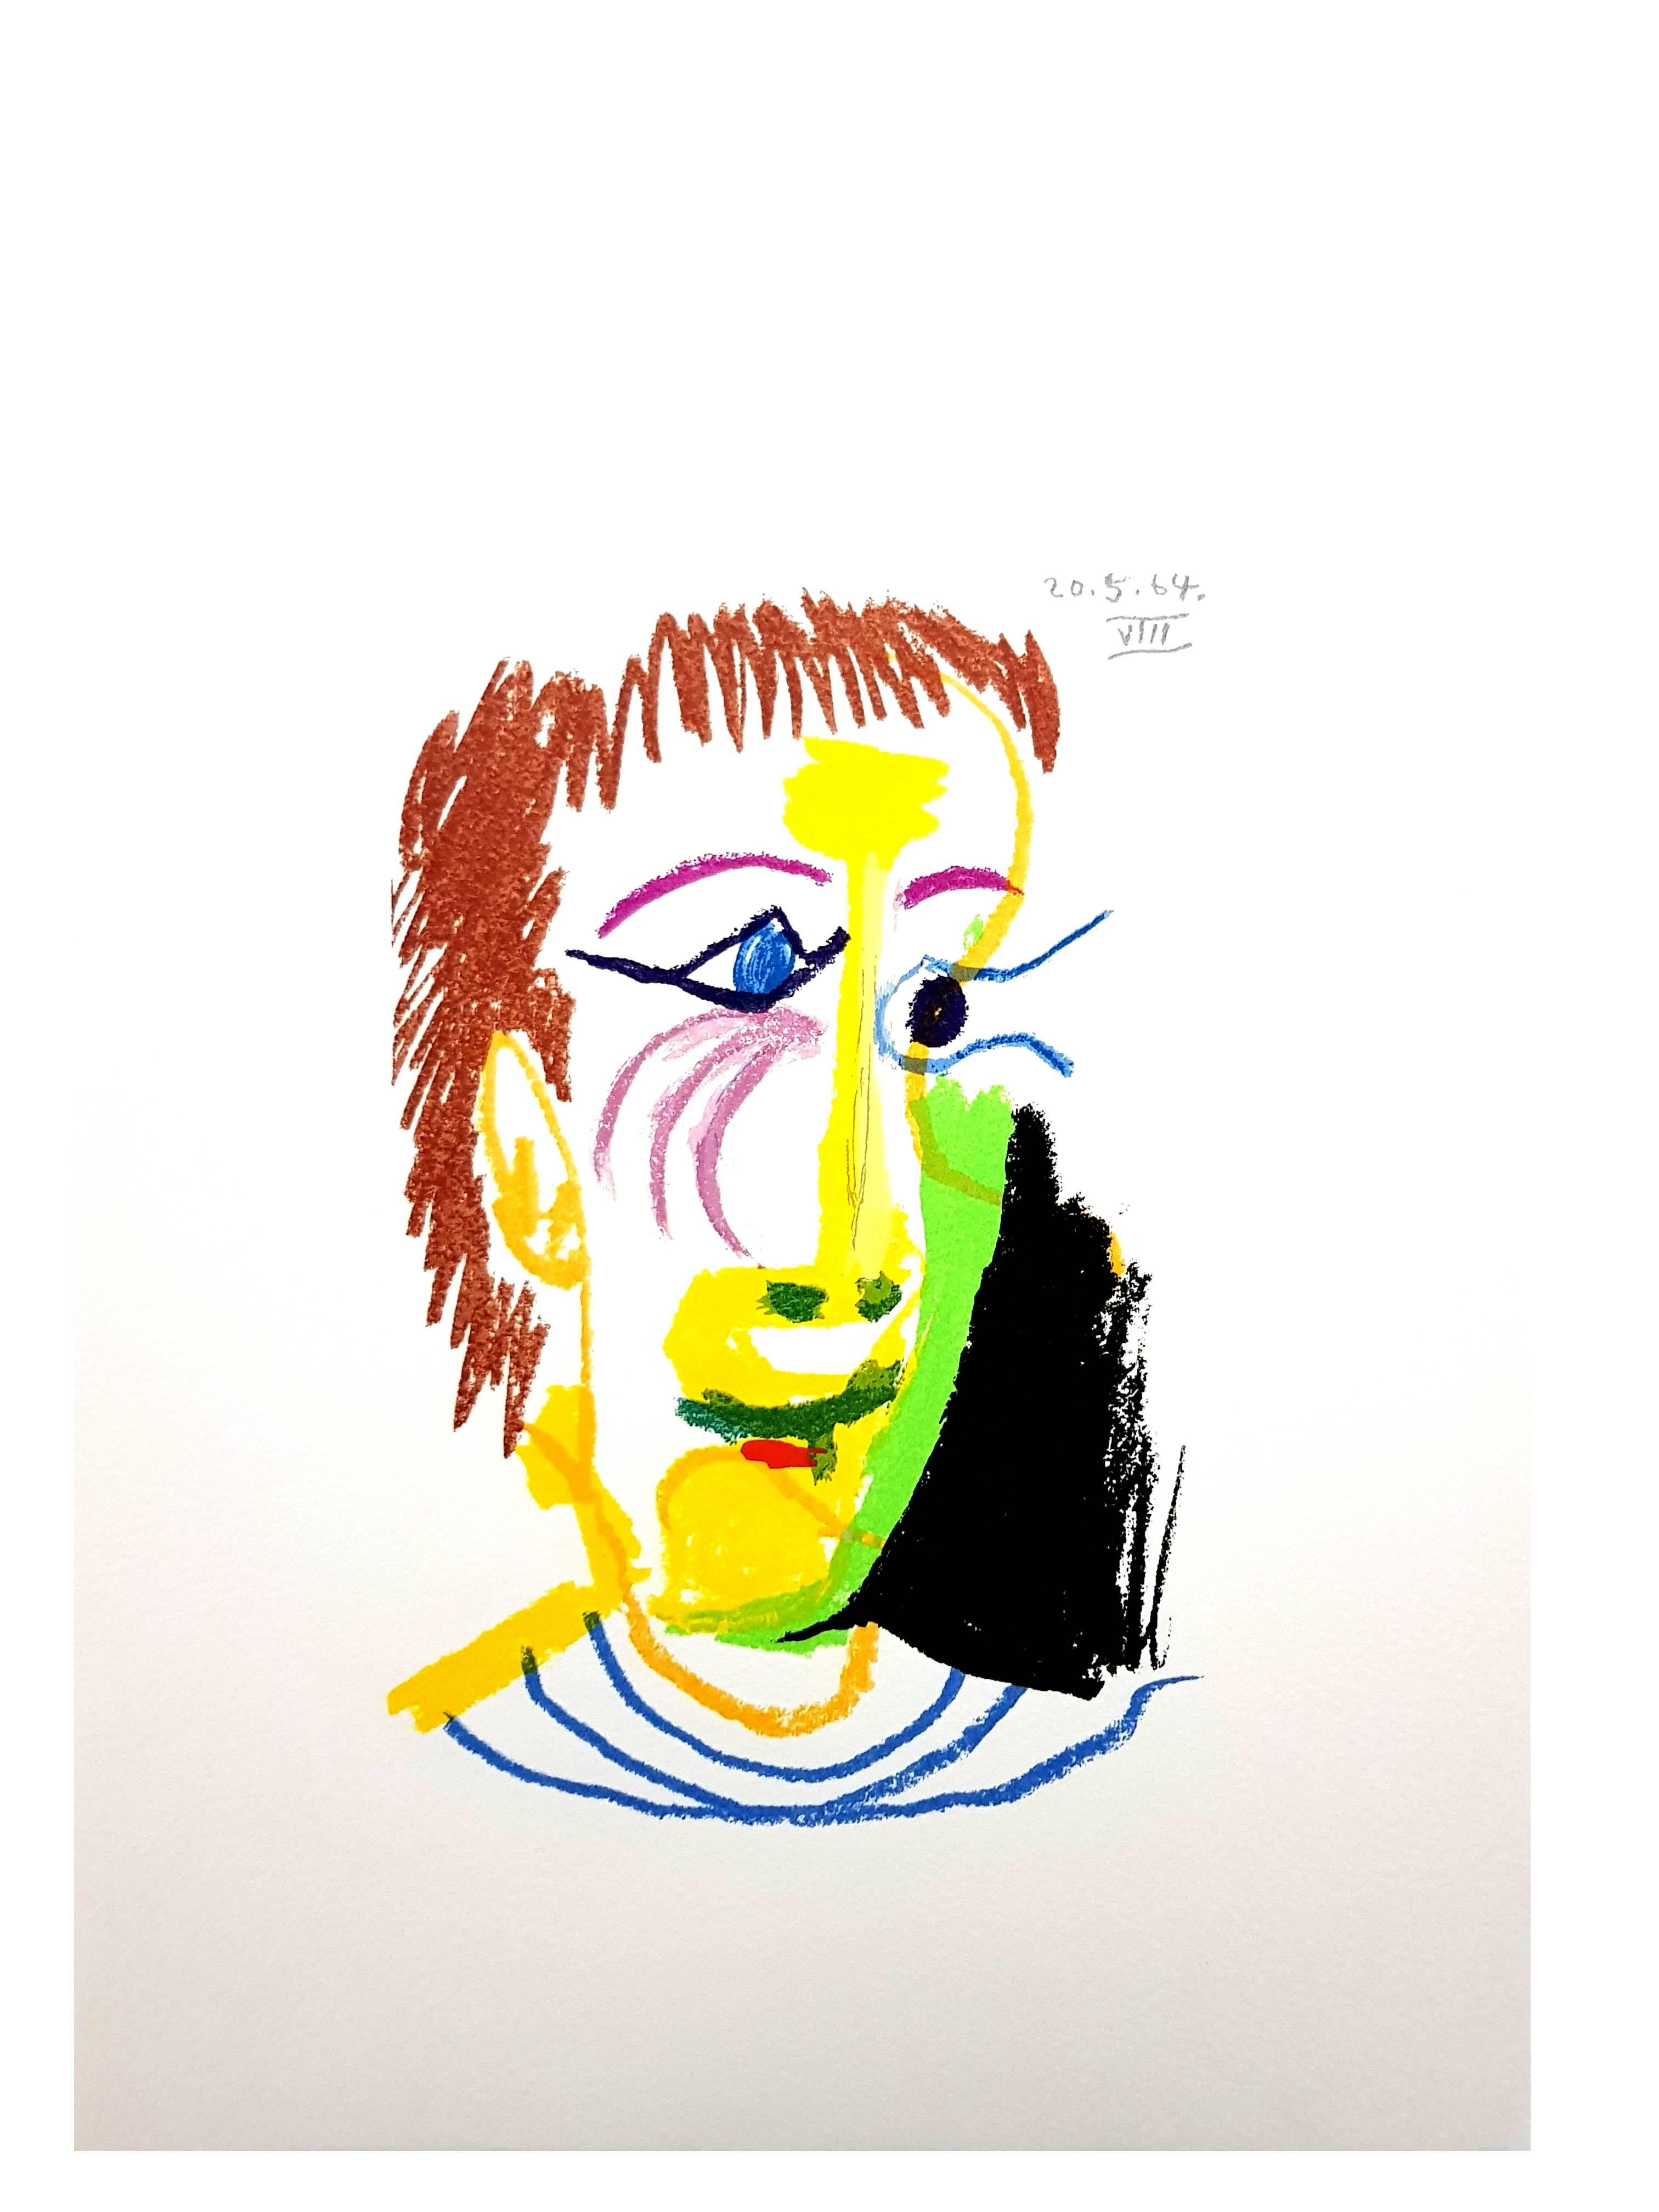  Le Goût de Bonheur: one plate (Joy Portrait) - Modern Print by (after) Pablo Picasso